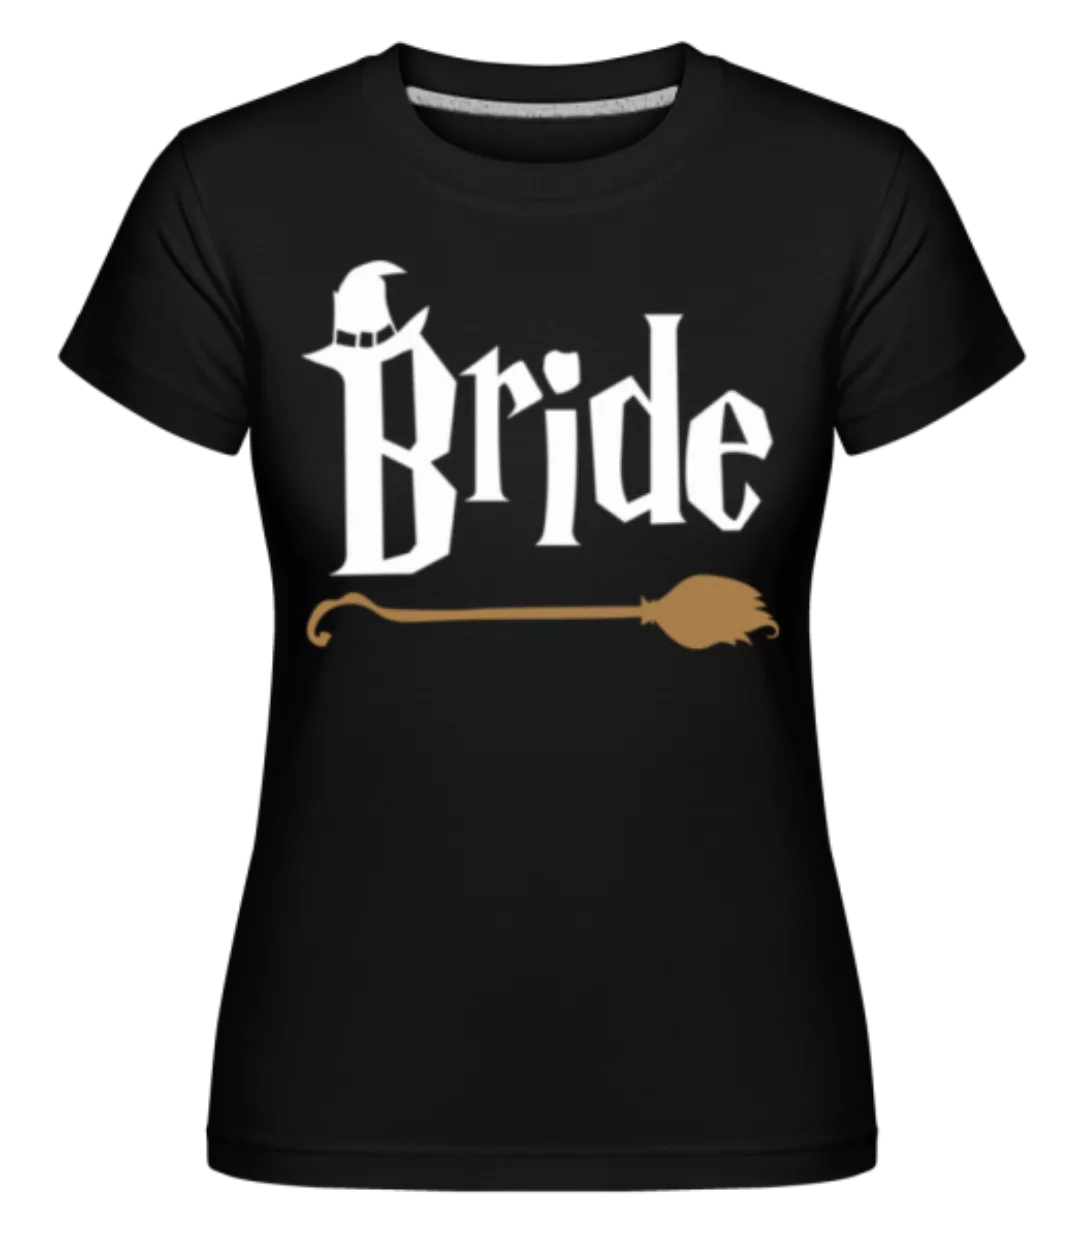 Bride · Shirtinator Frauen T-Shirt günstig online kaufen